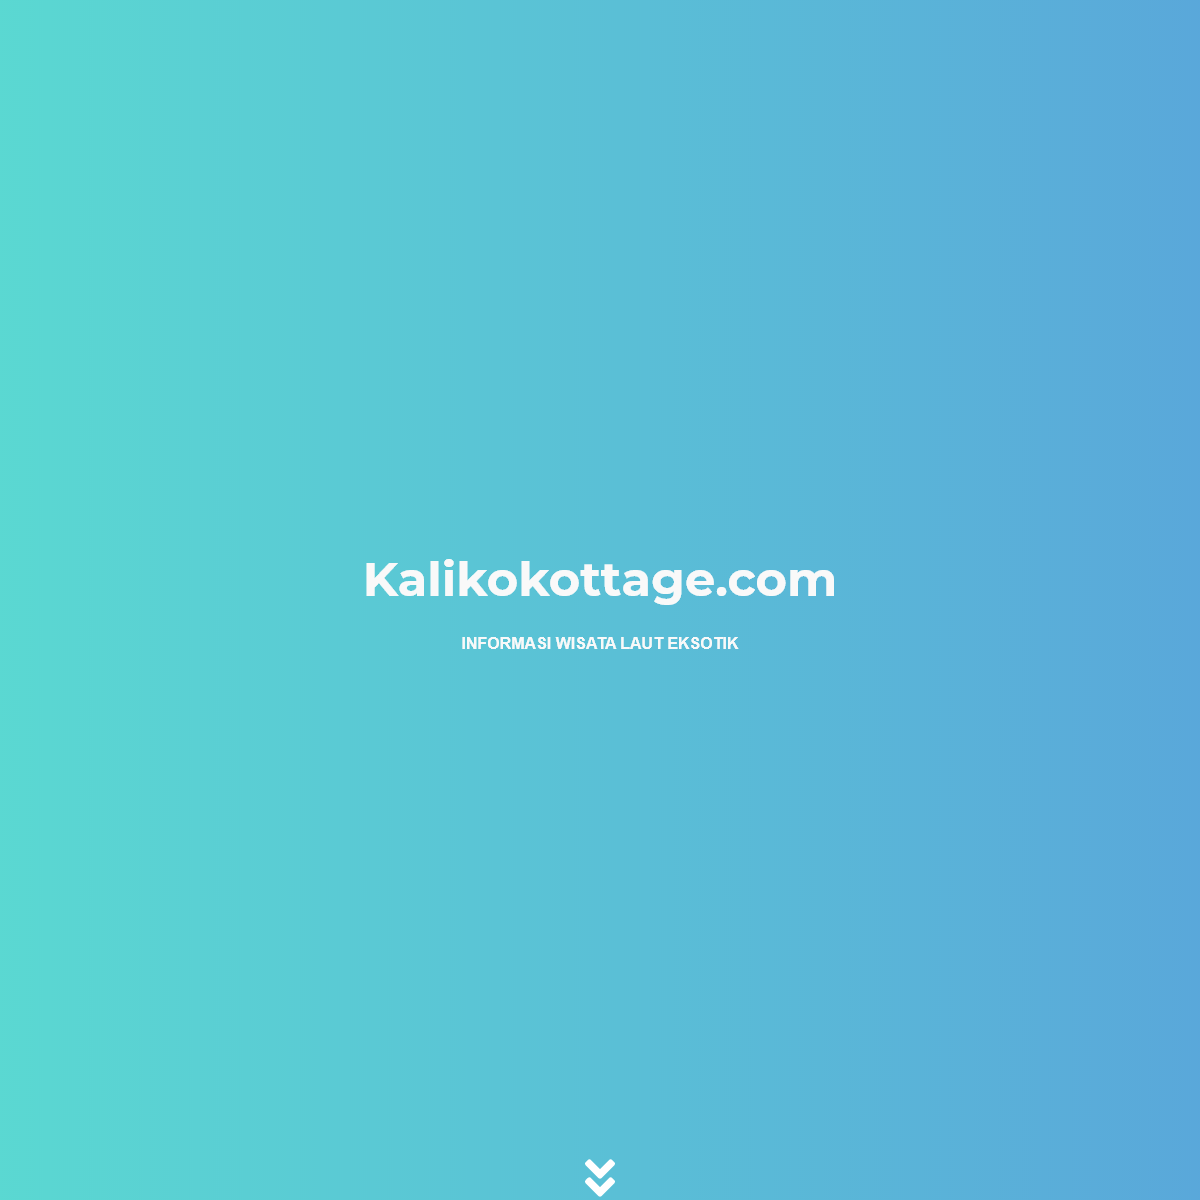 A complete backup of kalikokottage.com